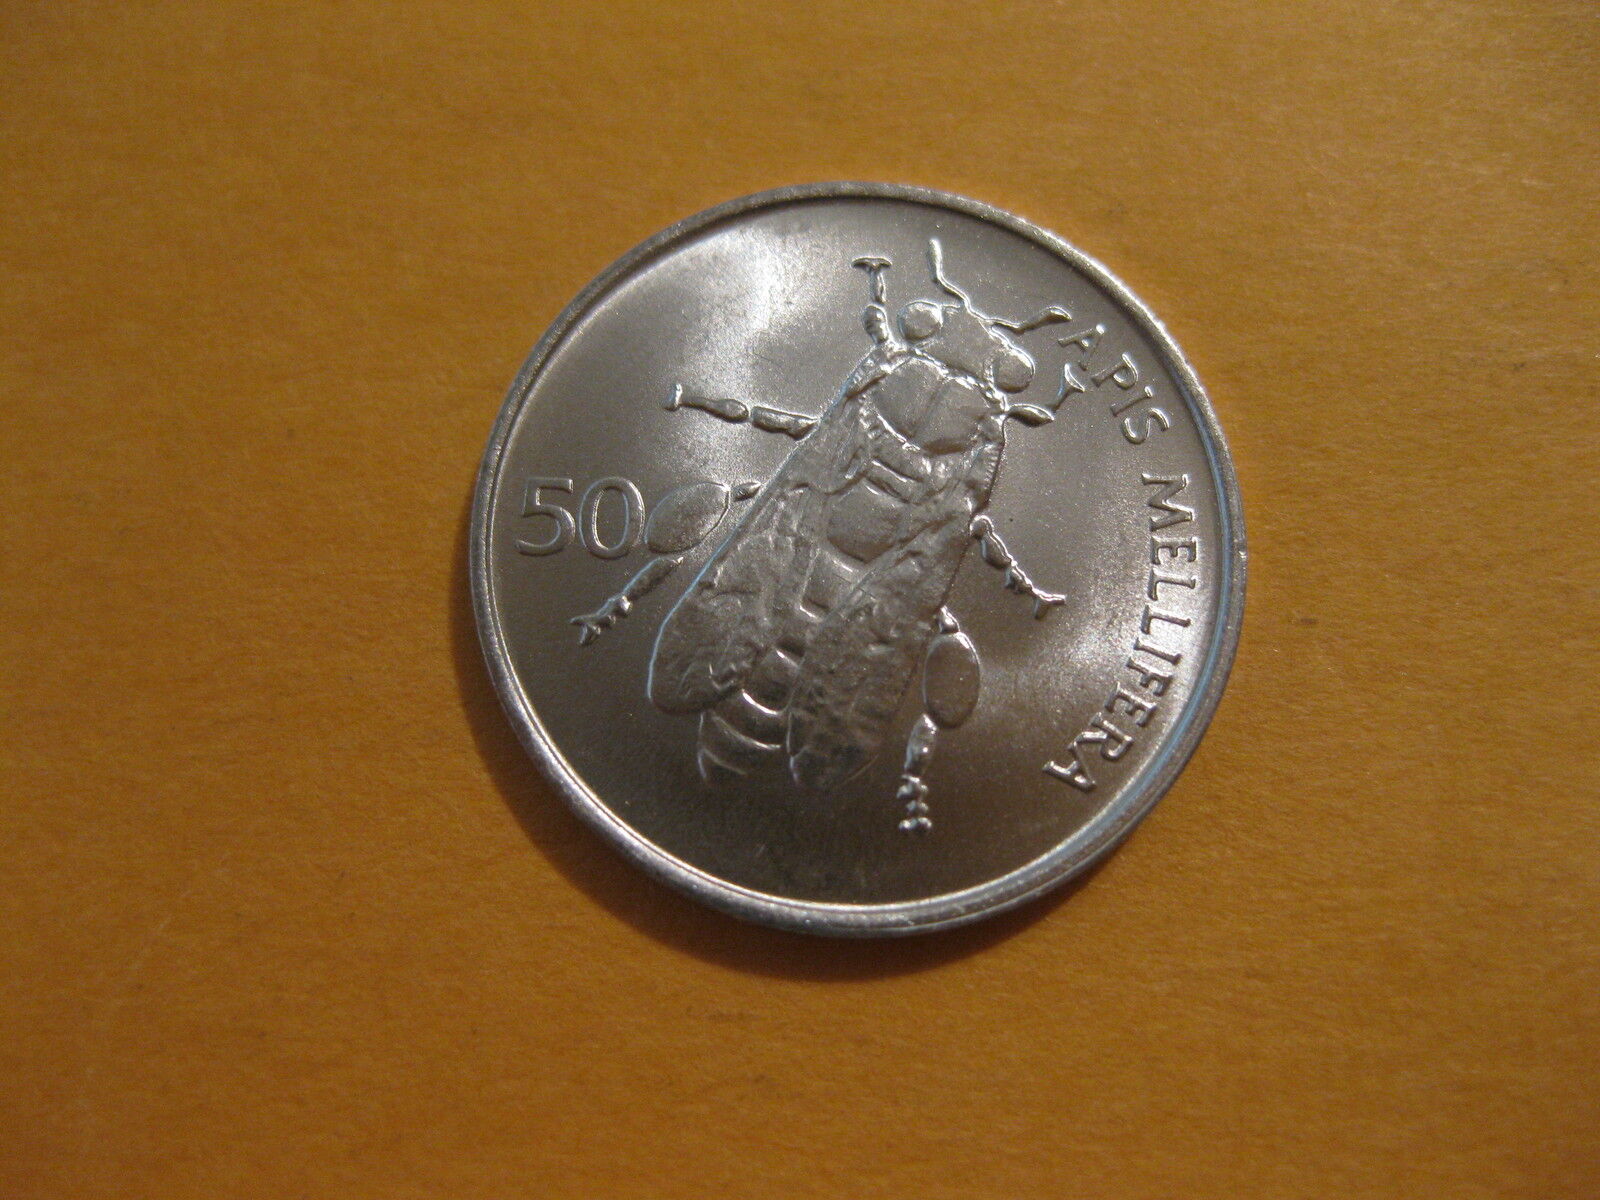  1993 or Slovenia Coin 50 Stotinov  \